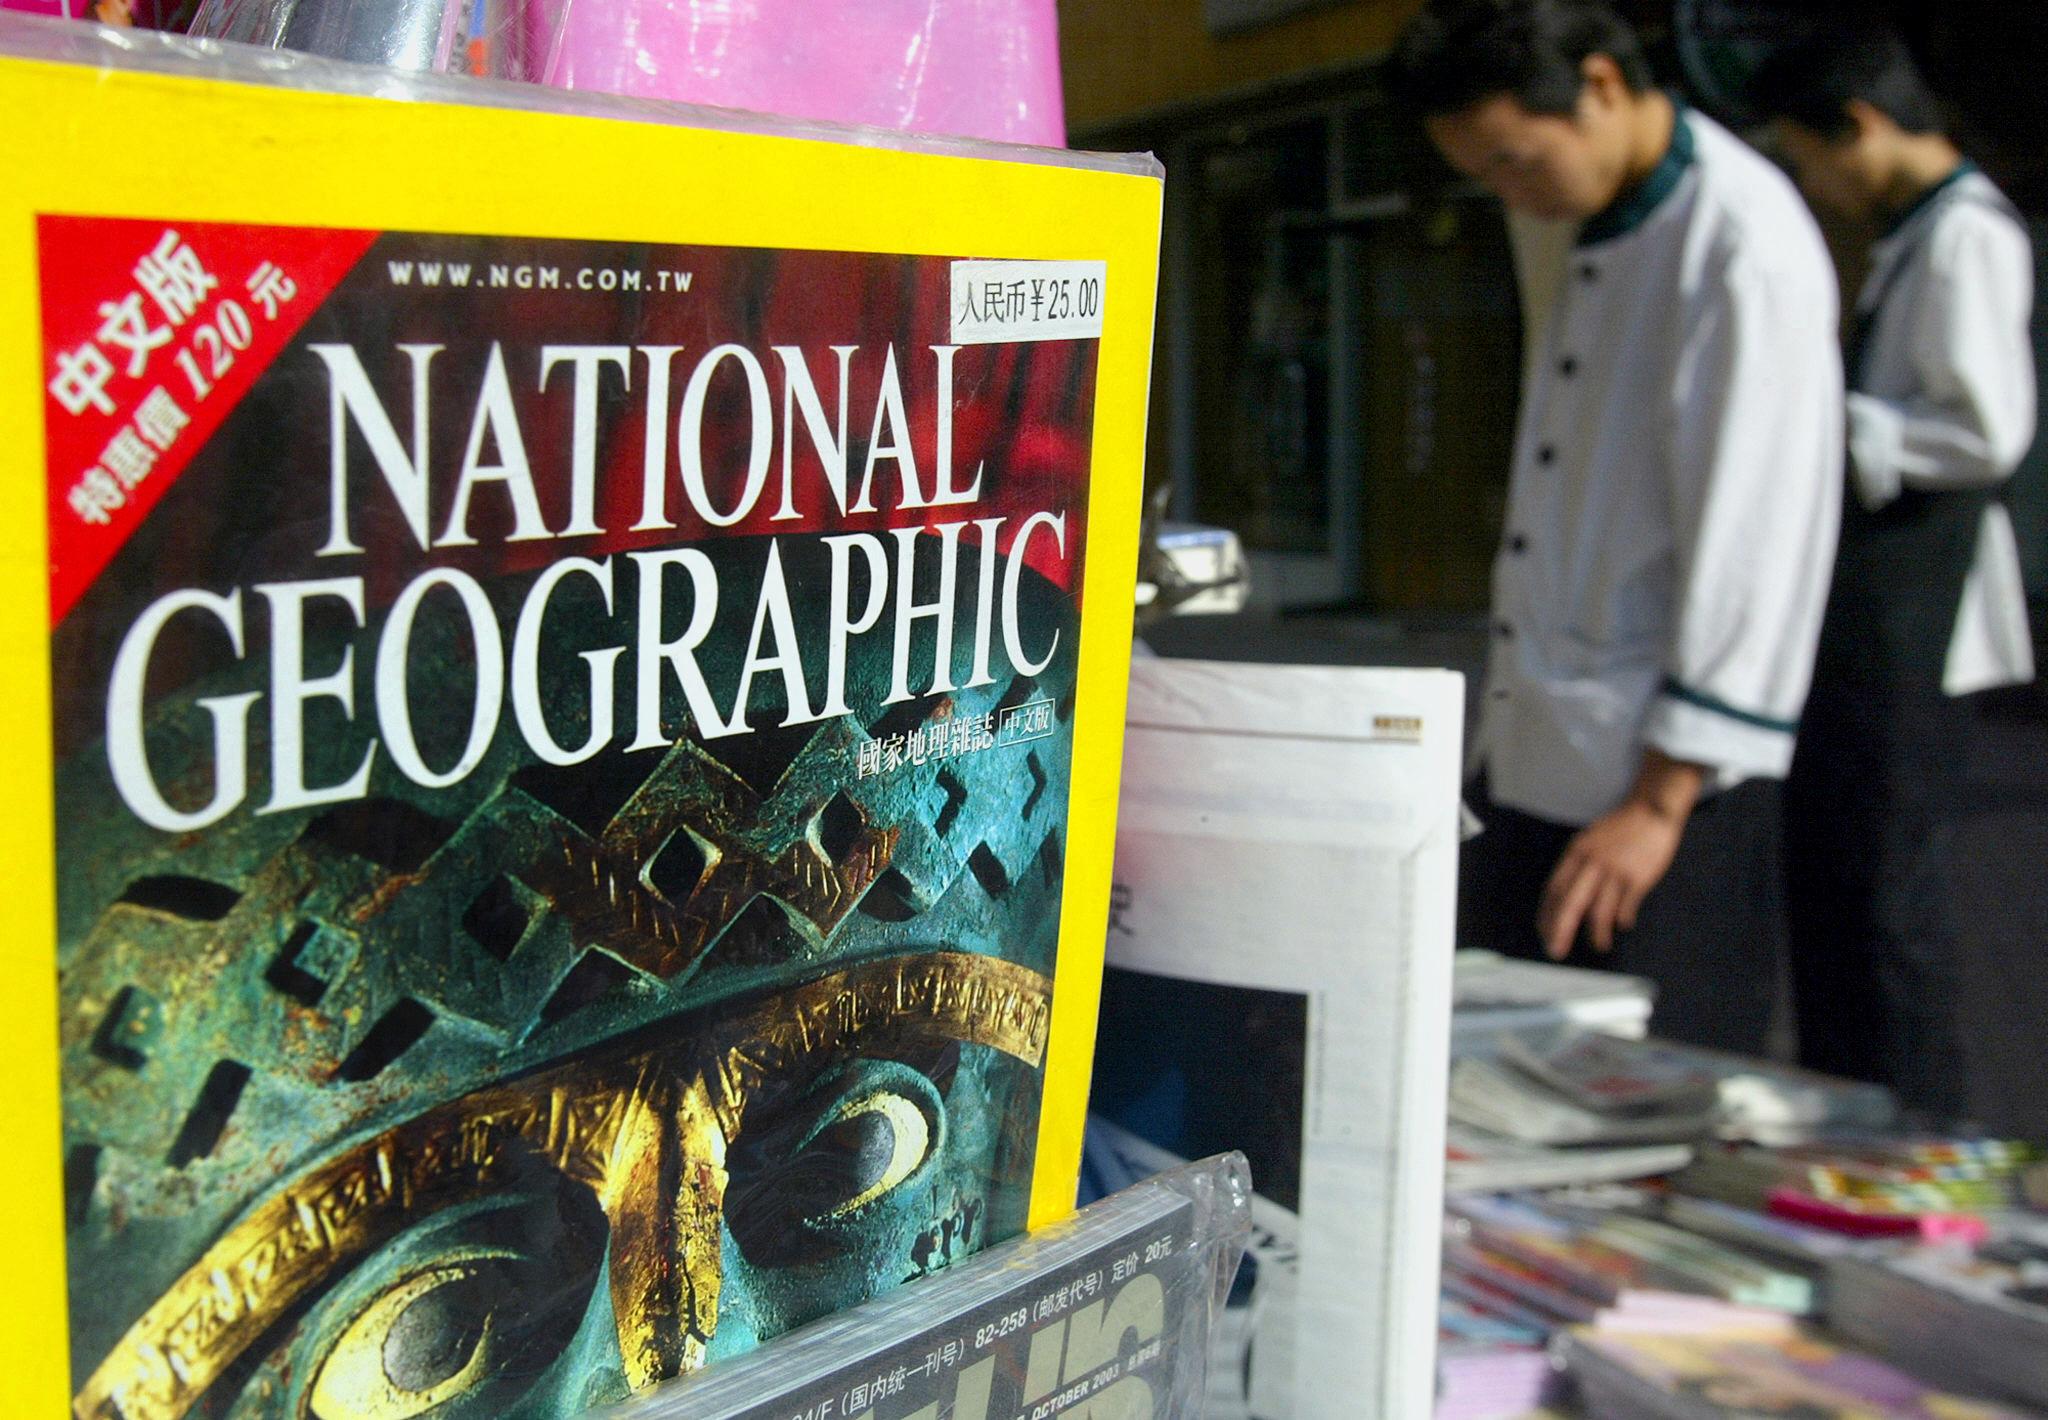 Az összes szerzőjét kirúgta a National Geographic